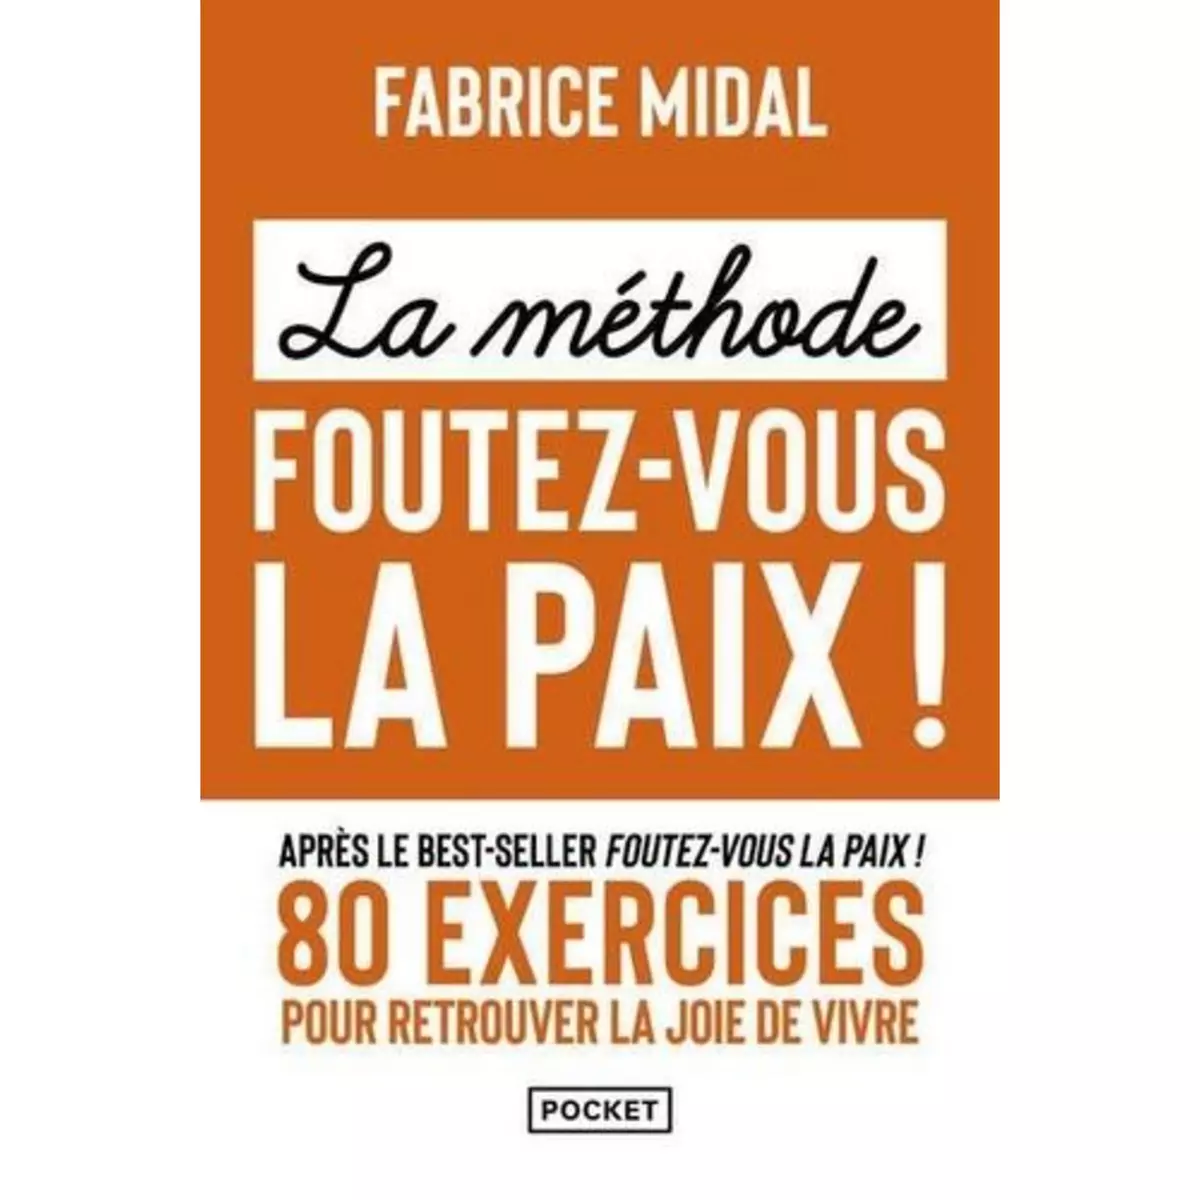  LA METHODE FOUTEZ-VOUS LA PAIX !, Midal Fabrice